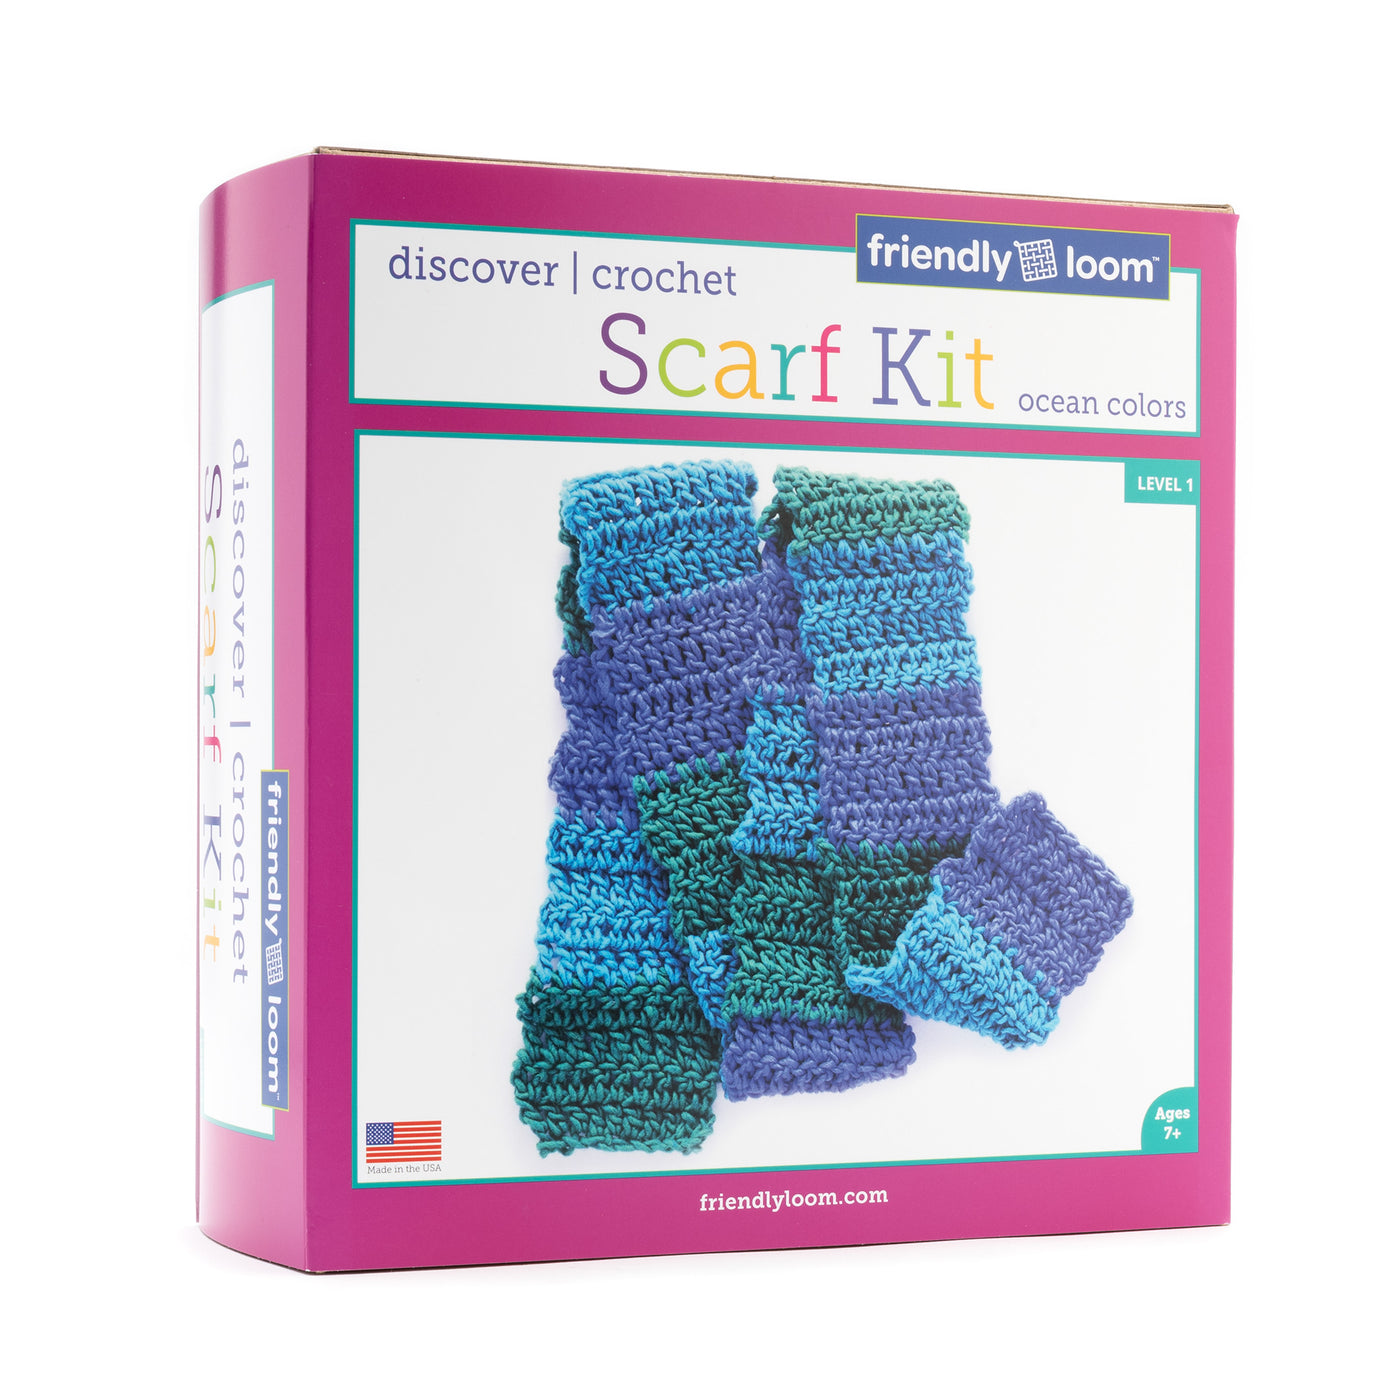 Discover Crochet: Scarf Kit – Ocean